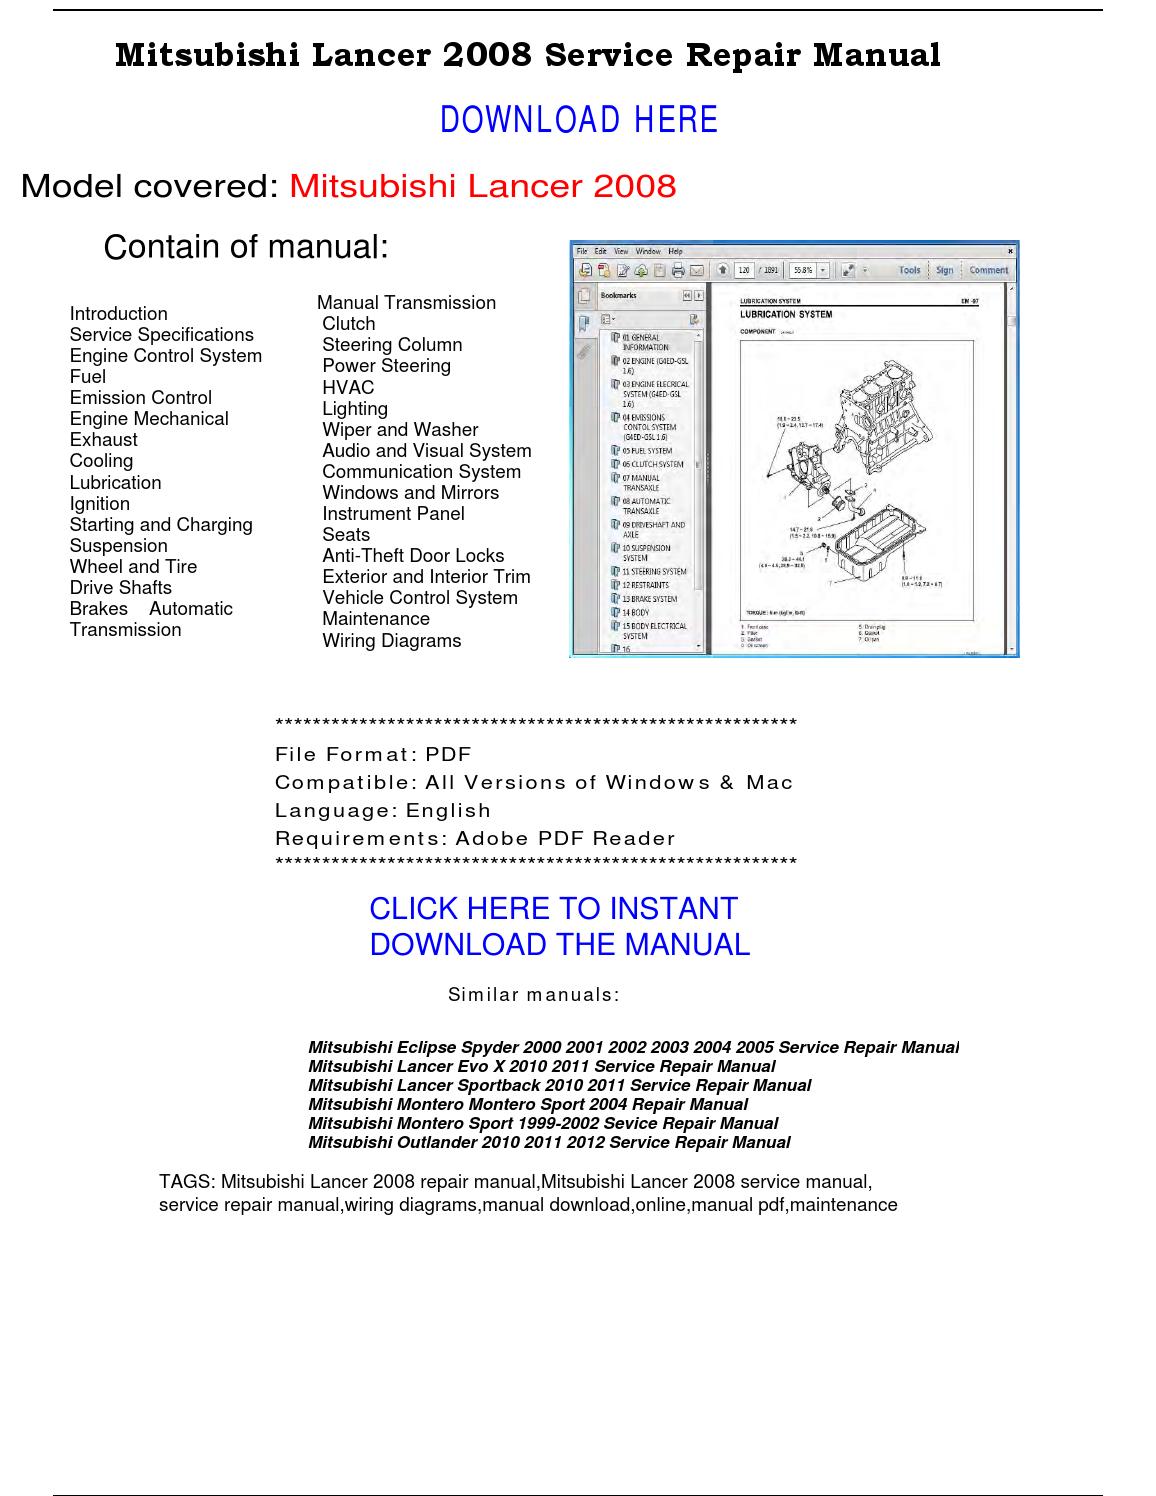 2003 mitsubishi lancer repair manual